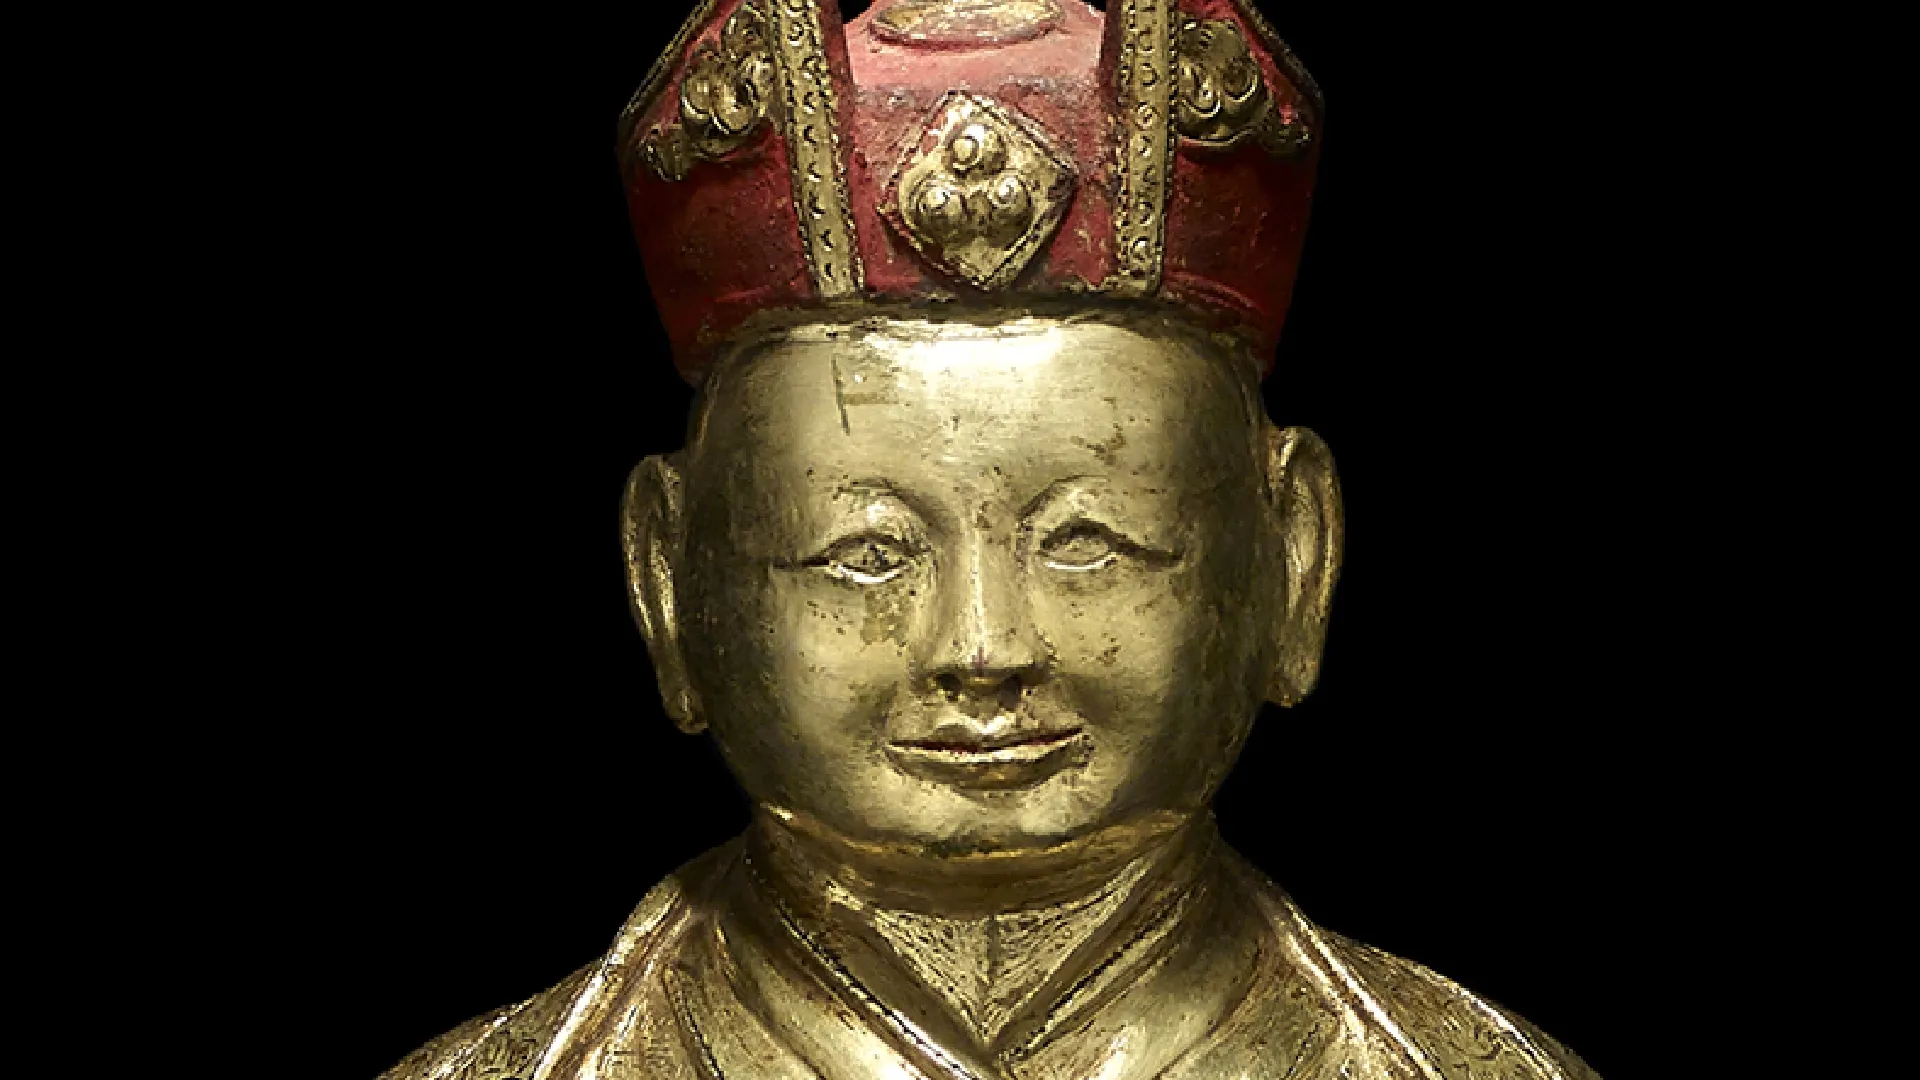 A gilt copper alloy figure of the Fourth Sharmapa, Chokyi Drakpa Yeshe Pal Zangpo